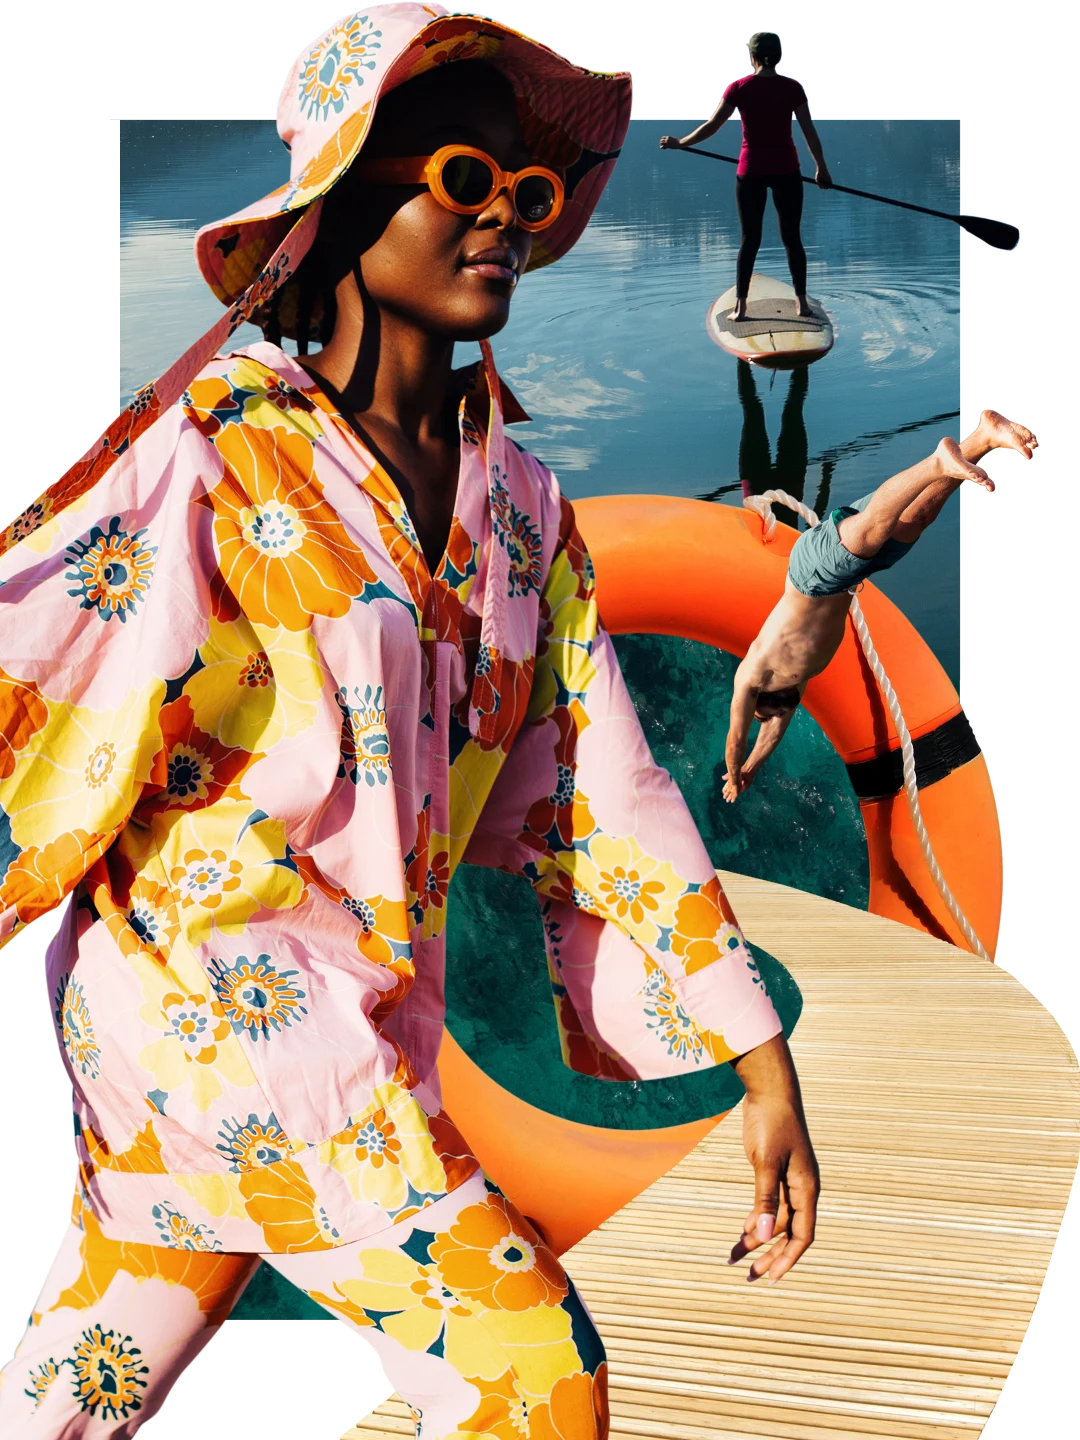 Collage sur le thème du lac. À gauche, femme noire en tenue rose à fleurs pour aller au lac à côté d’une promenade en bois et d’une personne plongeant dans l’eau à travers une bouée orange. En arrière-plan, personne en train de faire du paddle sur un lac.
